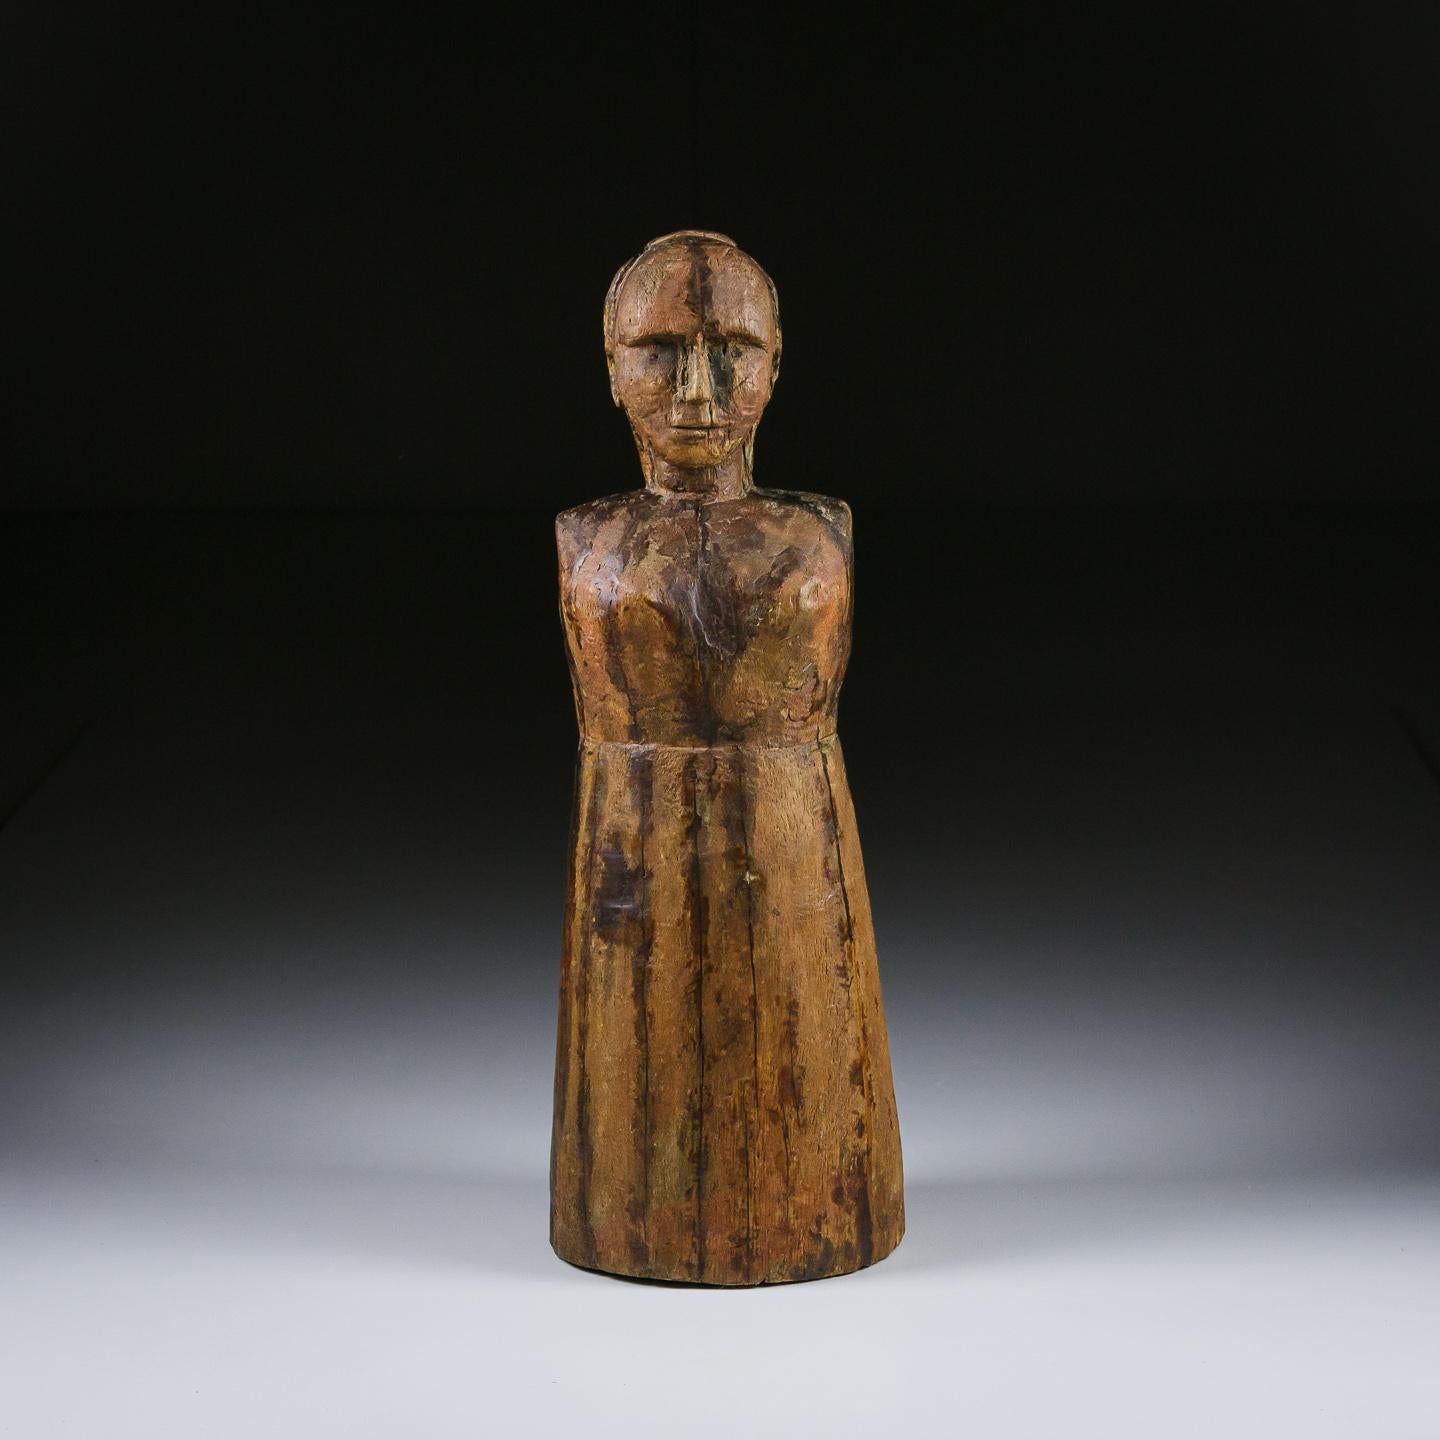 Émouvante figurine en bois sculpté du 19e siècle représentant une femme. Très probablement une figure de procession, patine sèche et forme extraordinaires. France Circa 1860